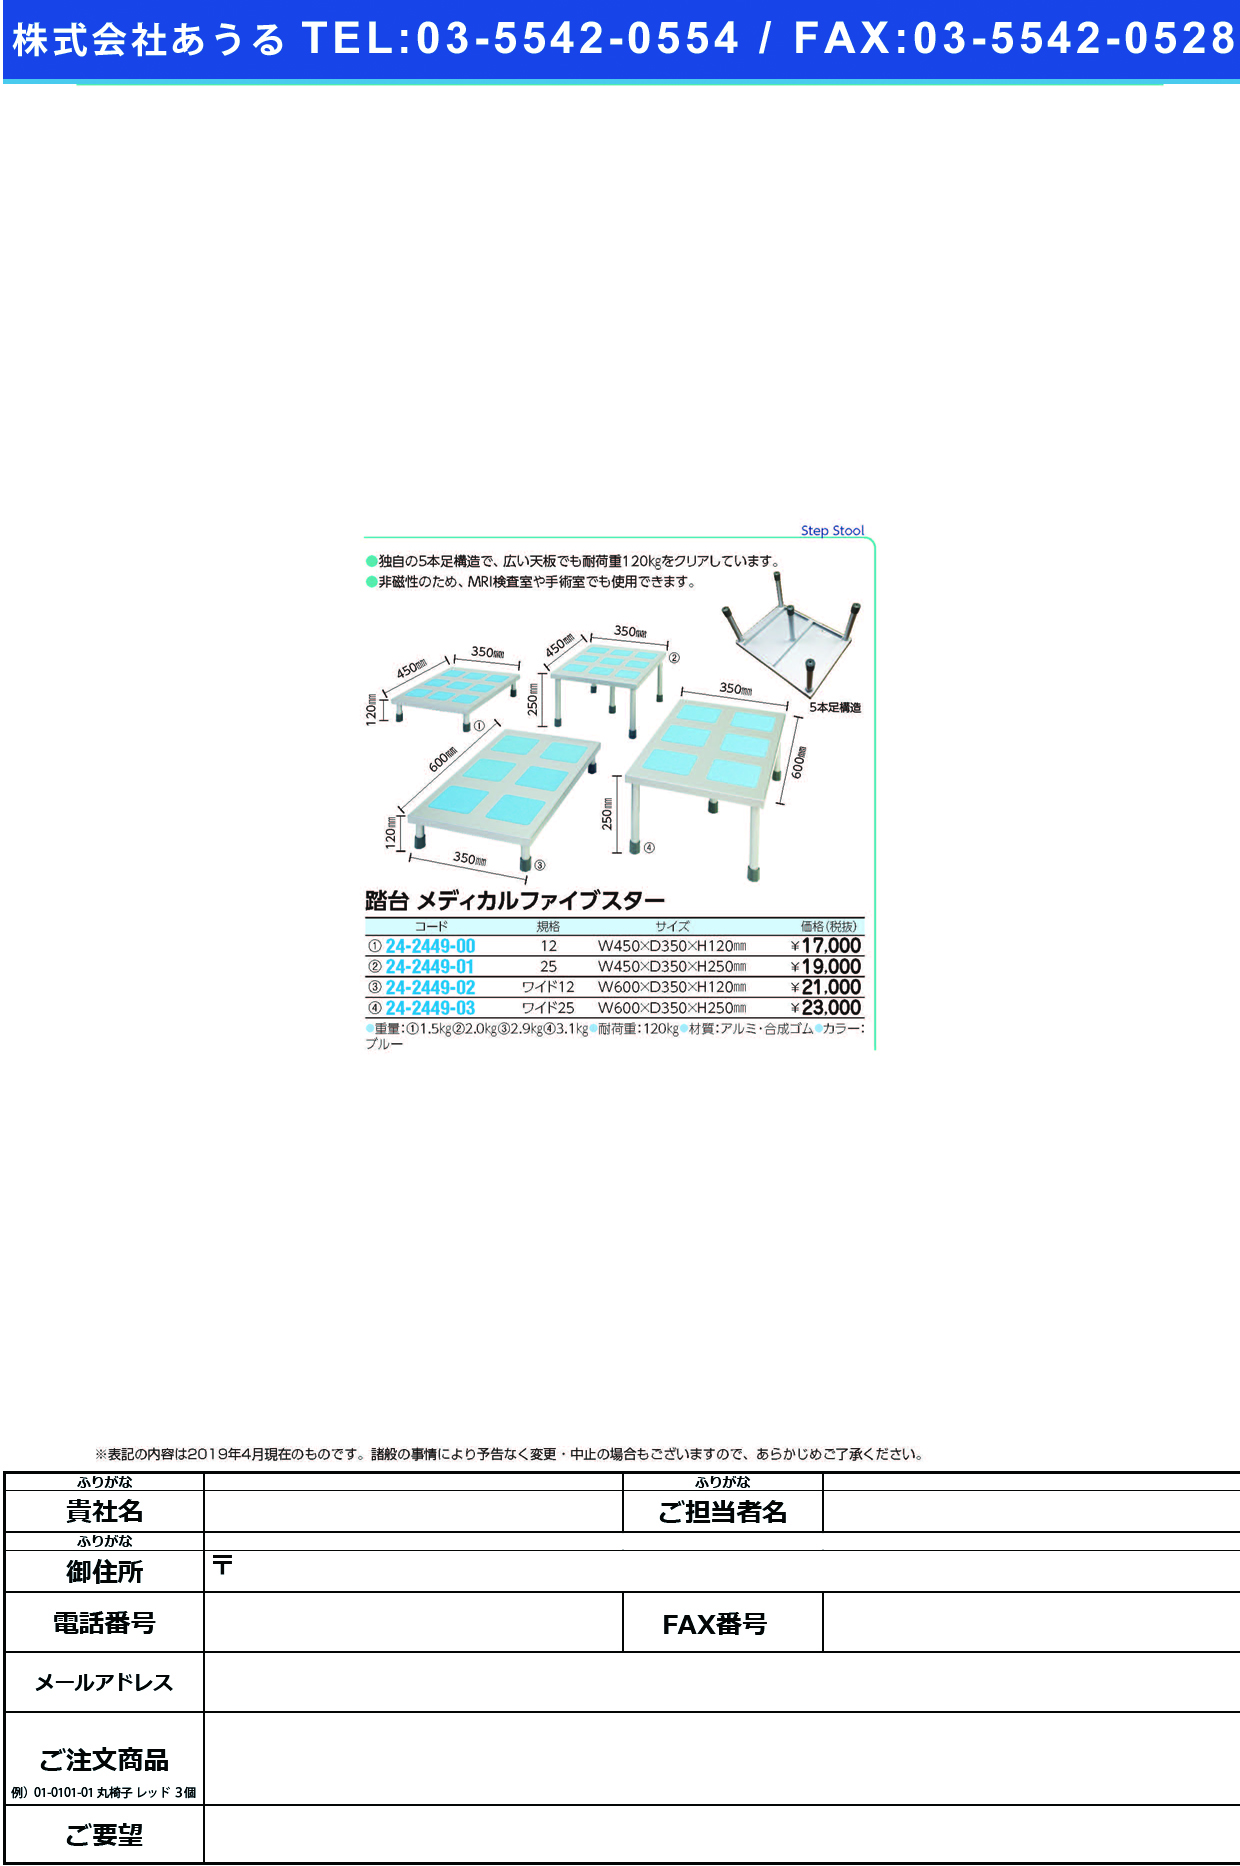 (24-2449-00)踏台メディカルファイブスター 12CM ﾌﾐﾀﾞｲﾒﾃﾞｨｶﾙﾌｧｲﾌﾞｽﾀｰ【1台単位】【2019年カタログ商品】